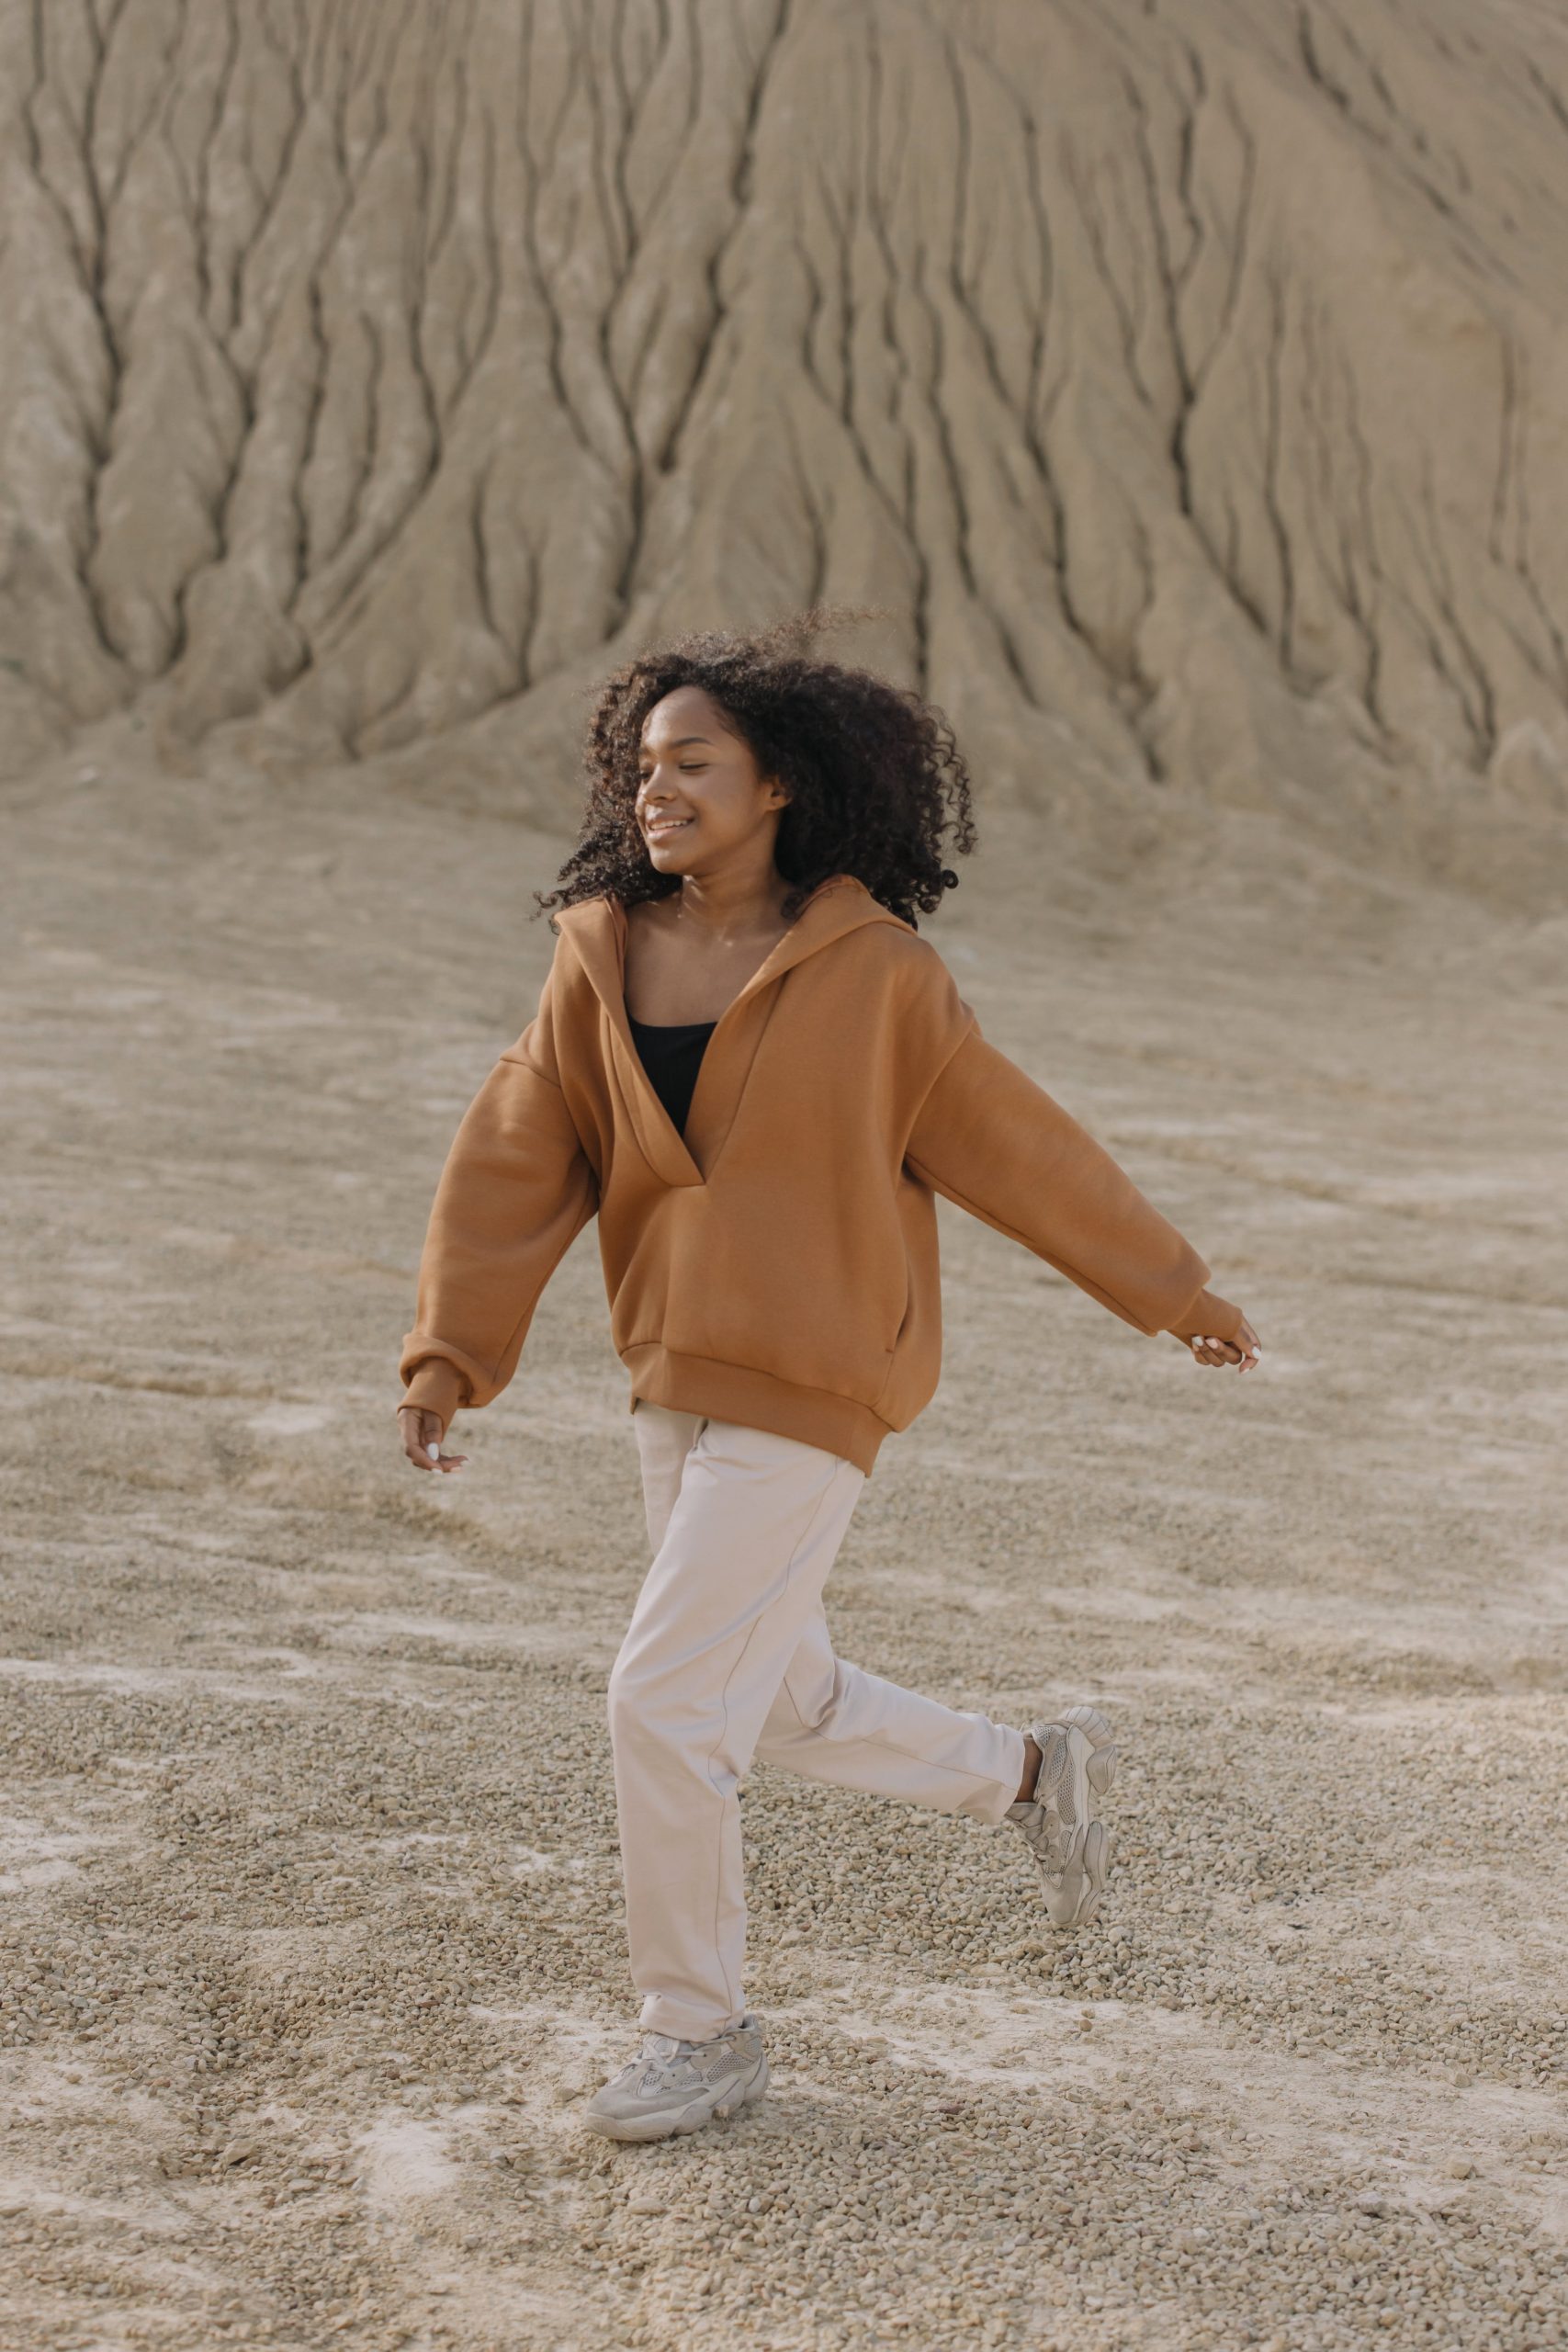 A woman in a tan sweatshirt running through a desert.